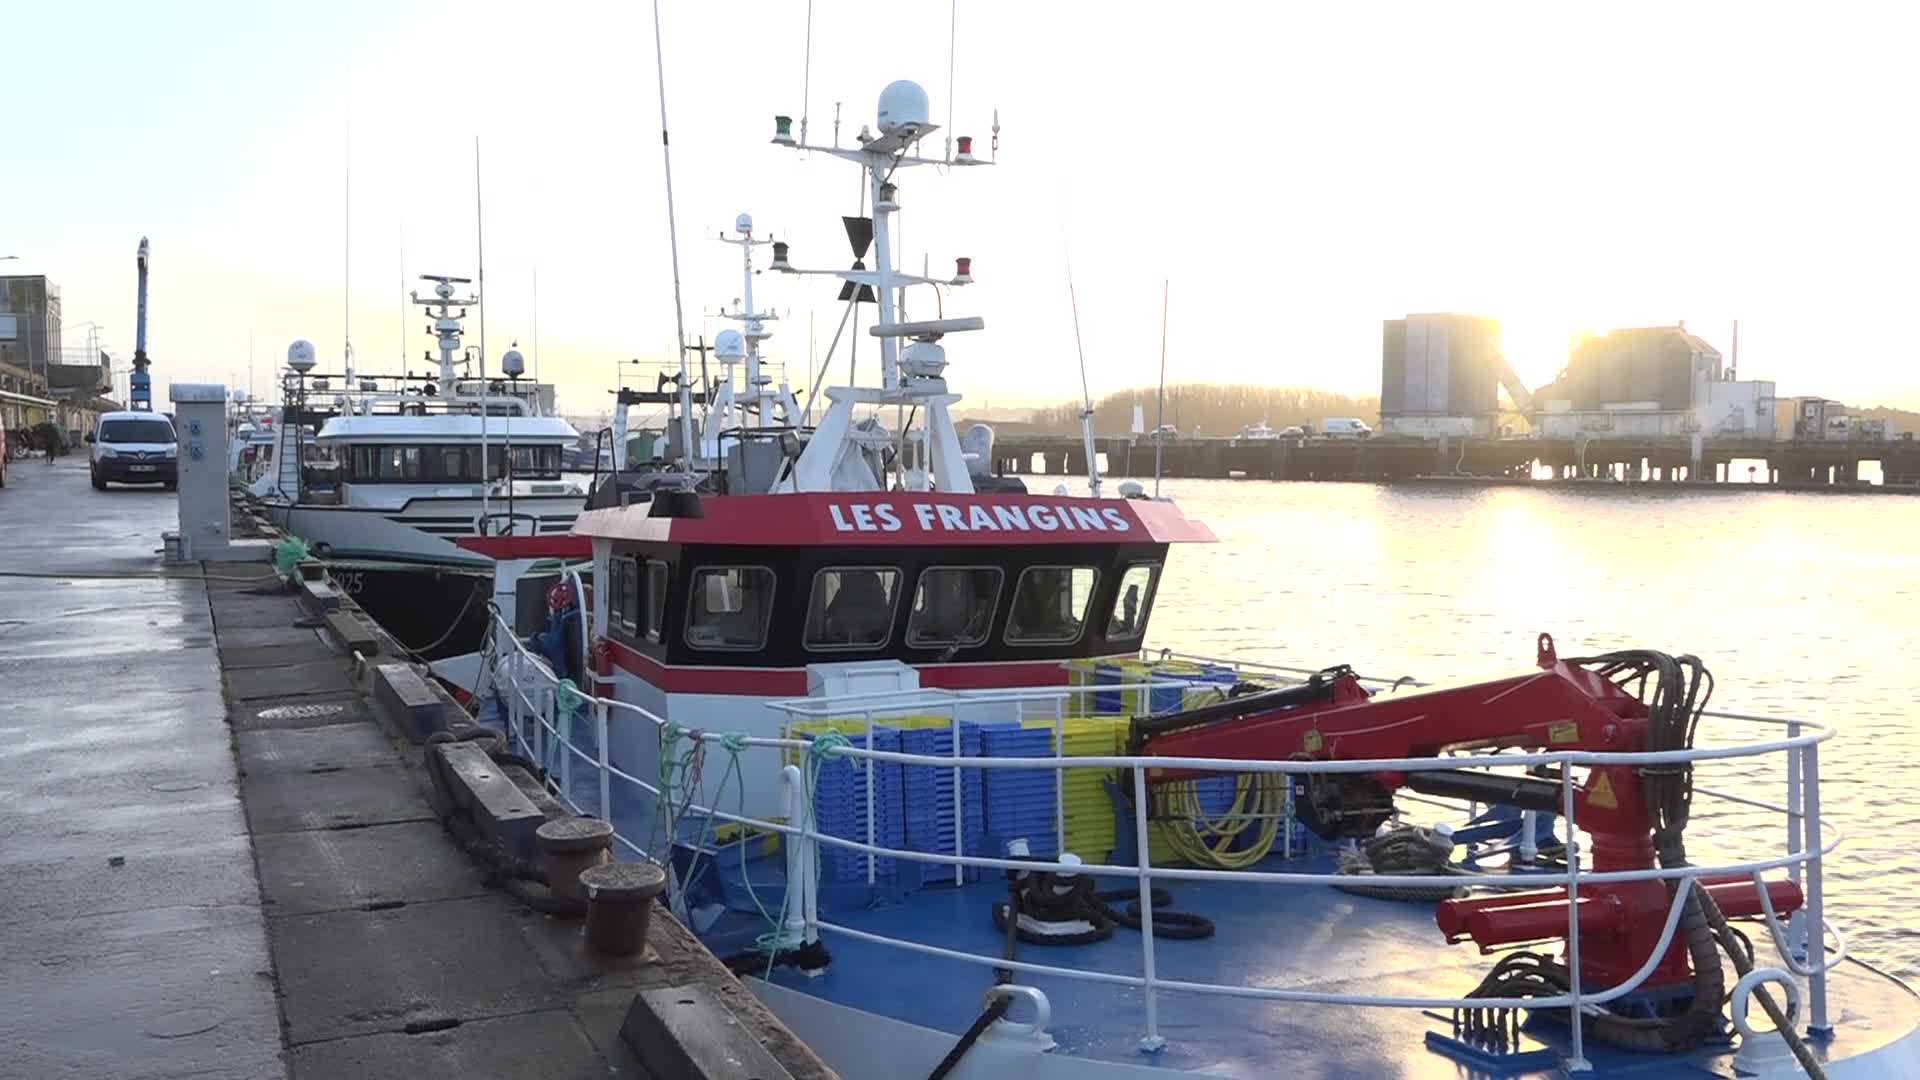 À Lorient, l'interdiction de pêche menace l'activité du port [Vidéo]